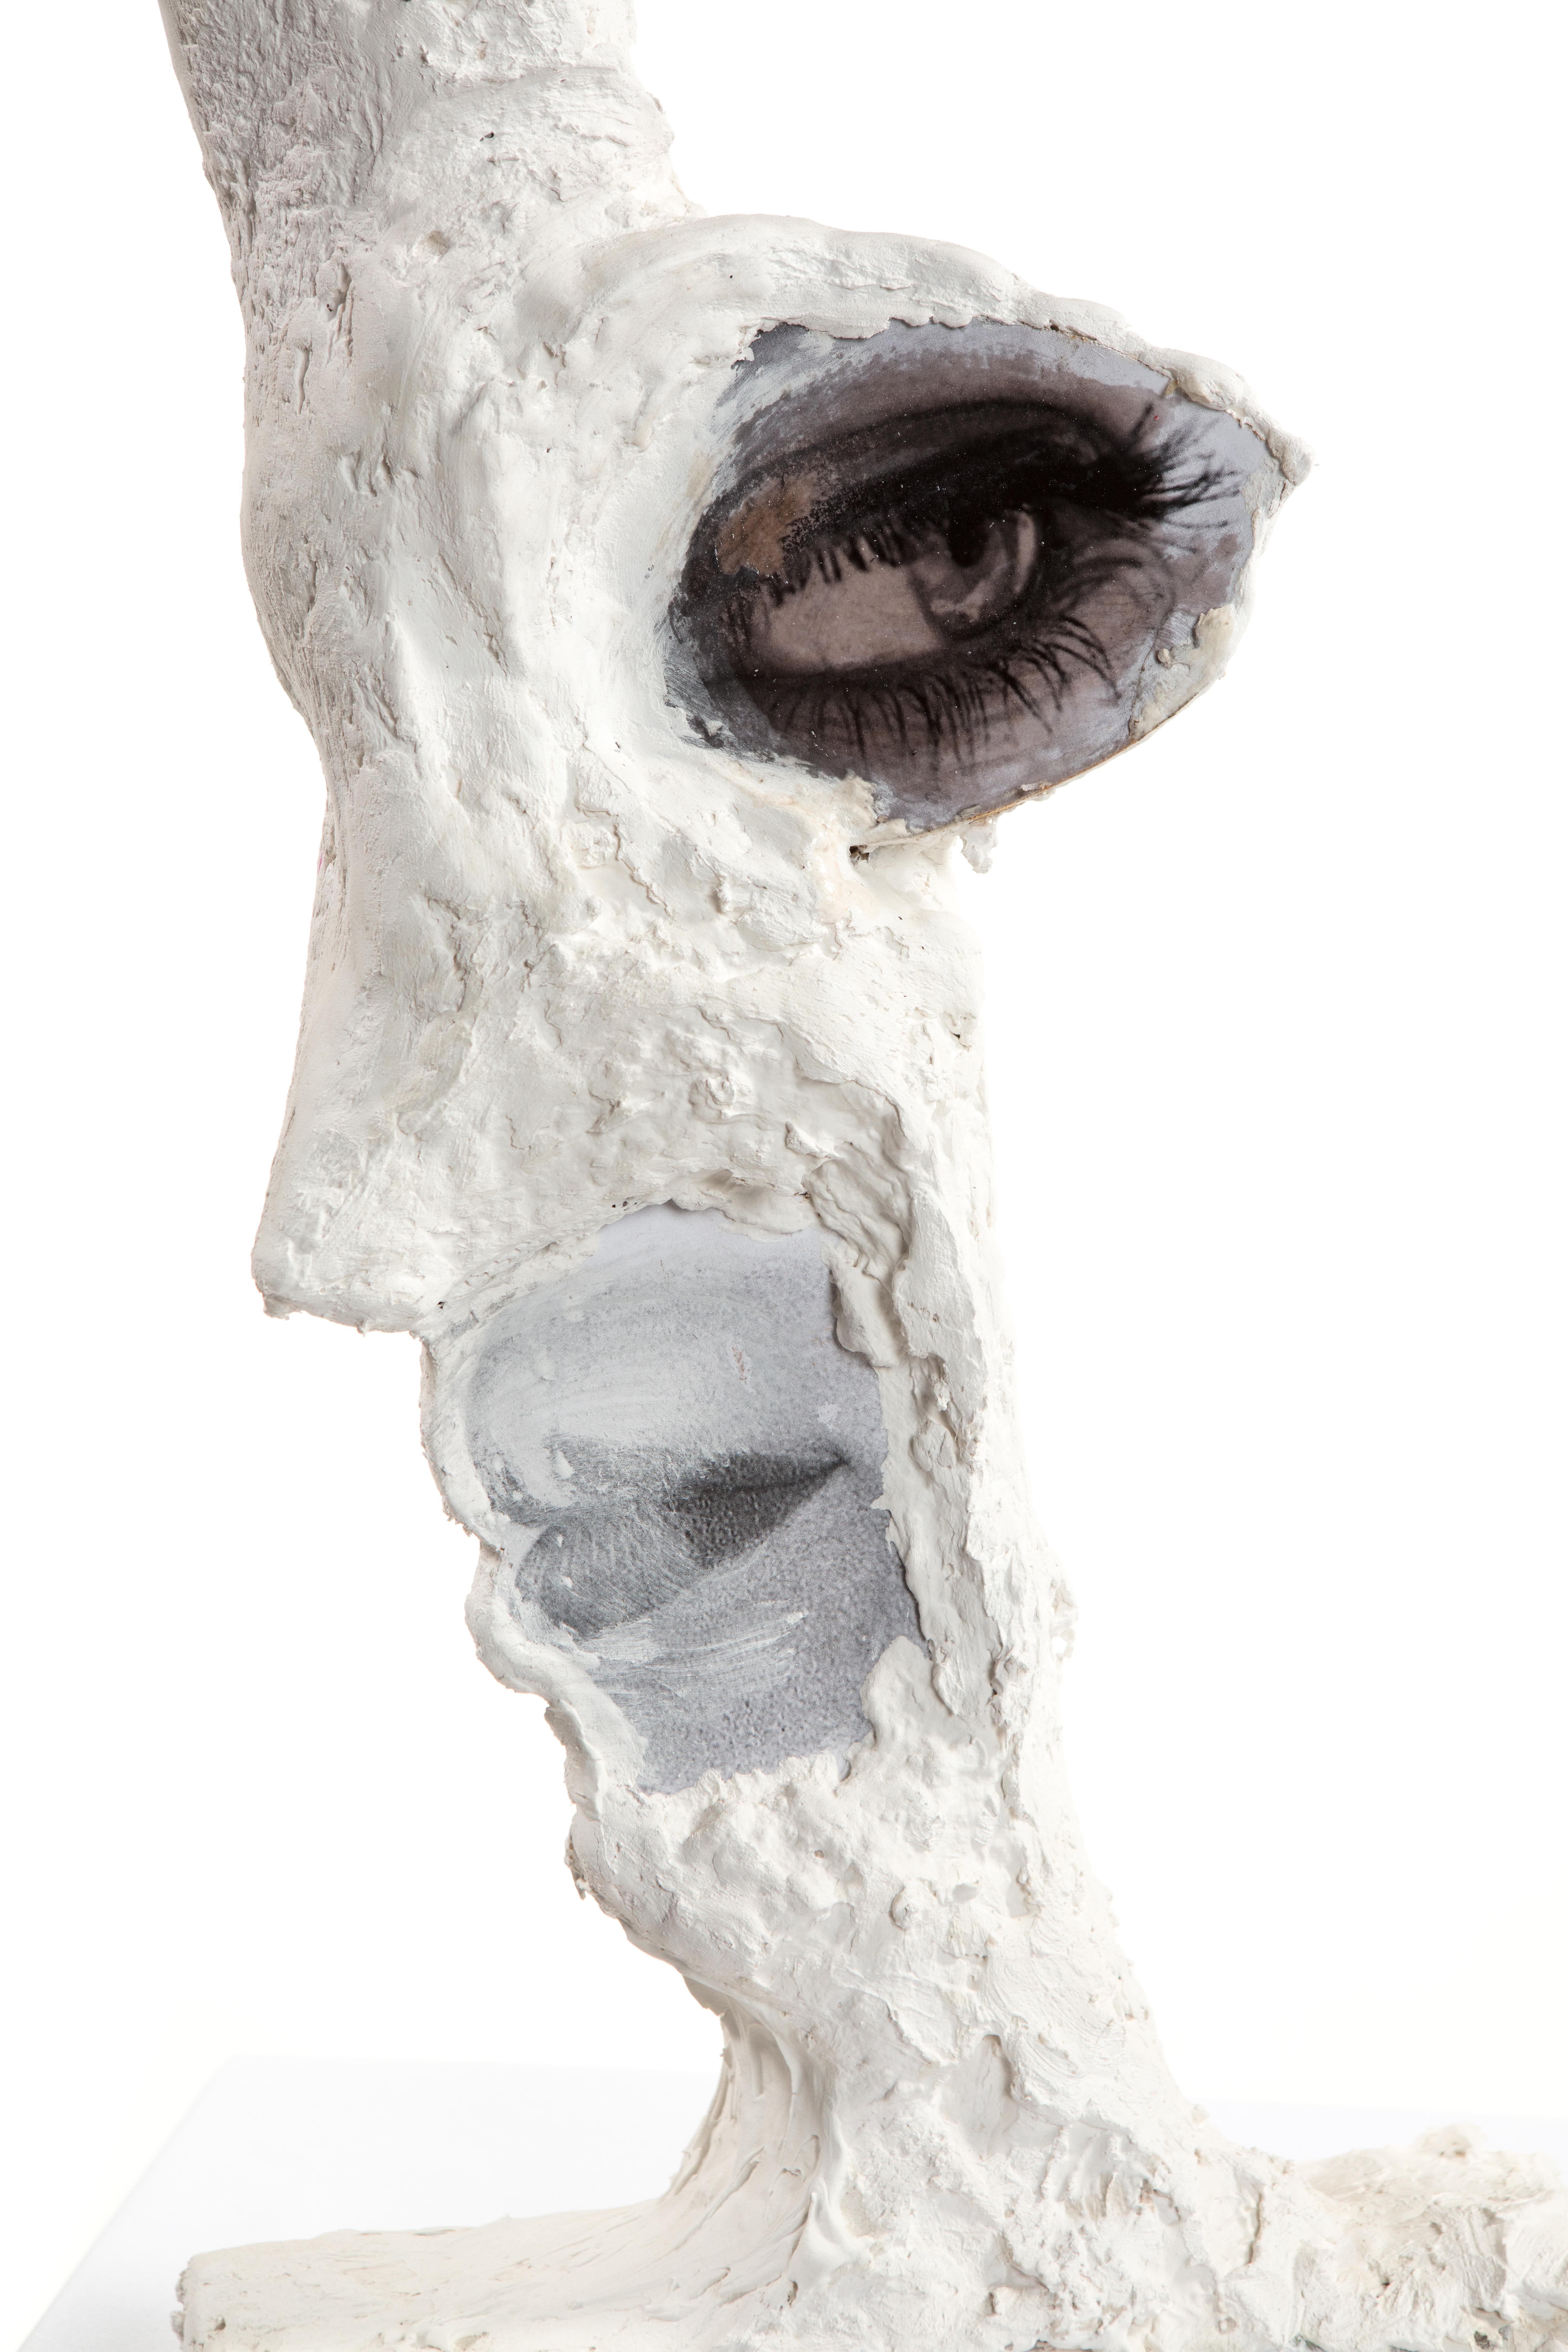 Dies ist ein neues Werk von Mattia Biagi
Skulpturale Gipsfigur, Gips + Papier und Bildcollage auf Holz.